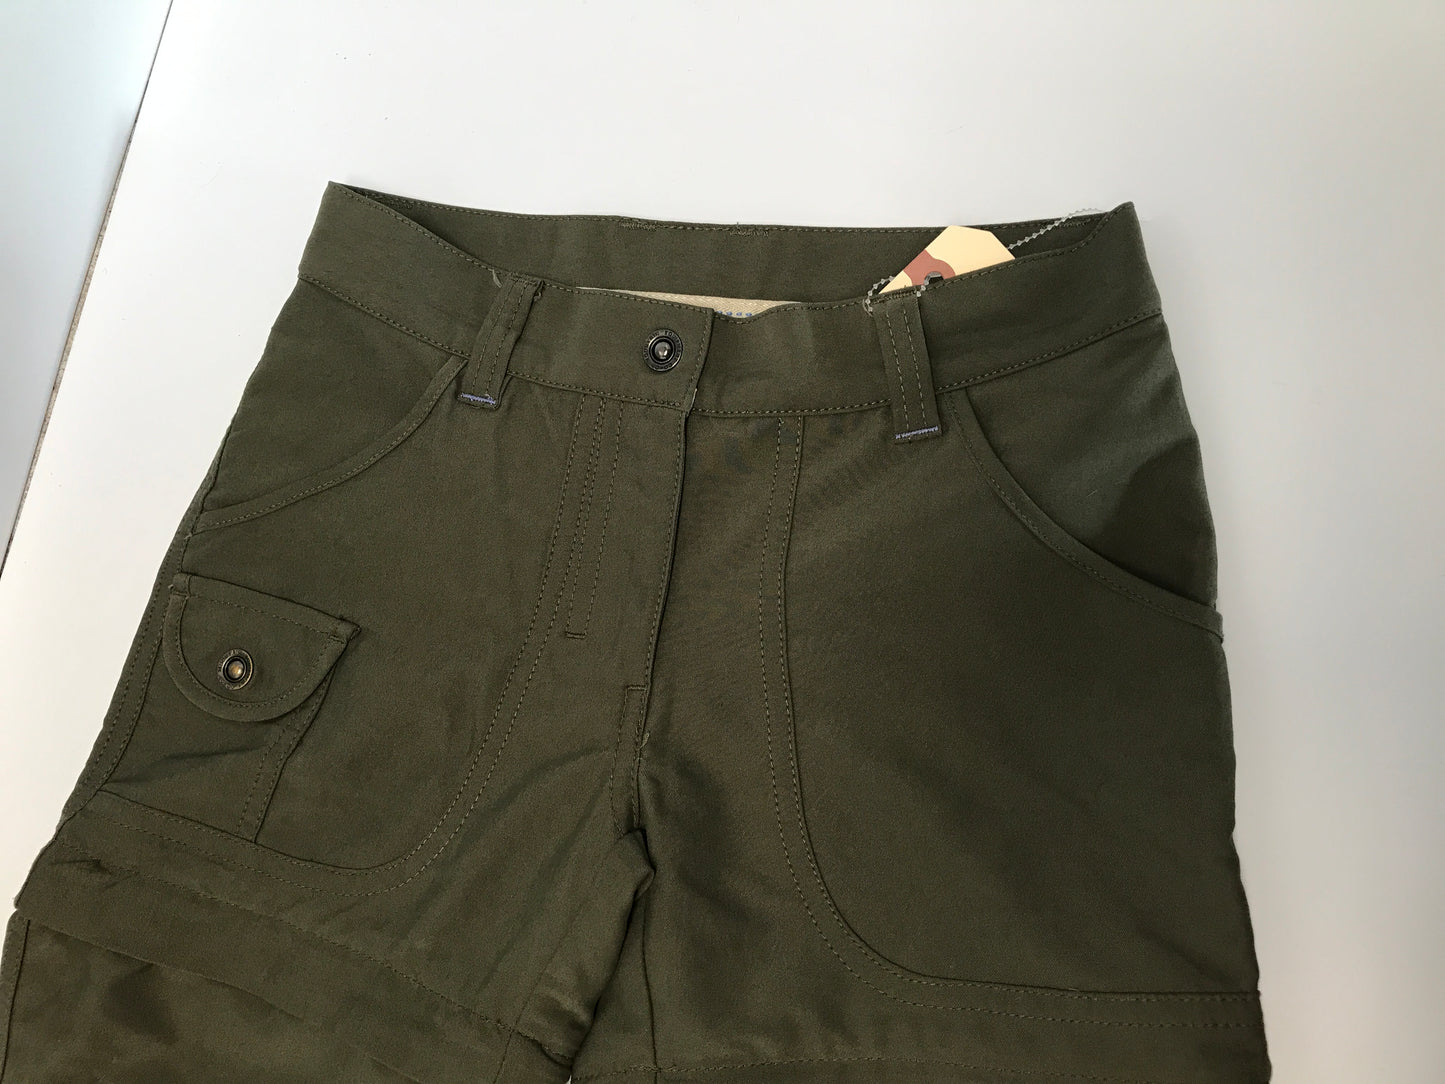 Mec Child Size 8 Hiking Pants Khaki With Zipper Remove Leg For Shorts